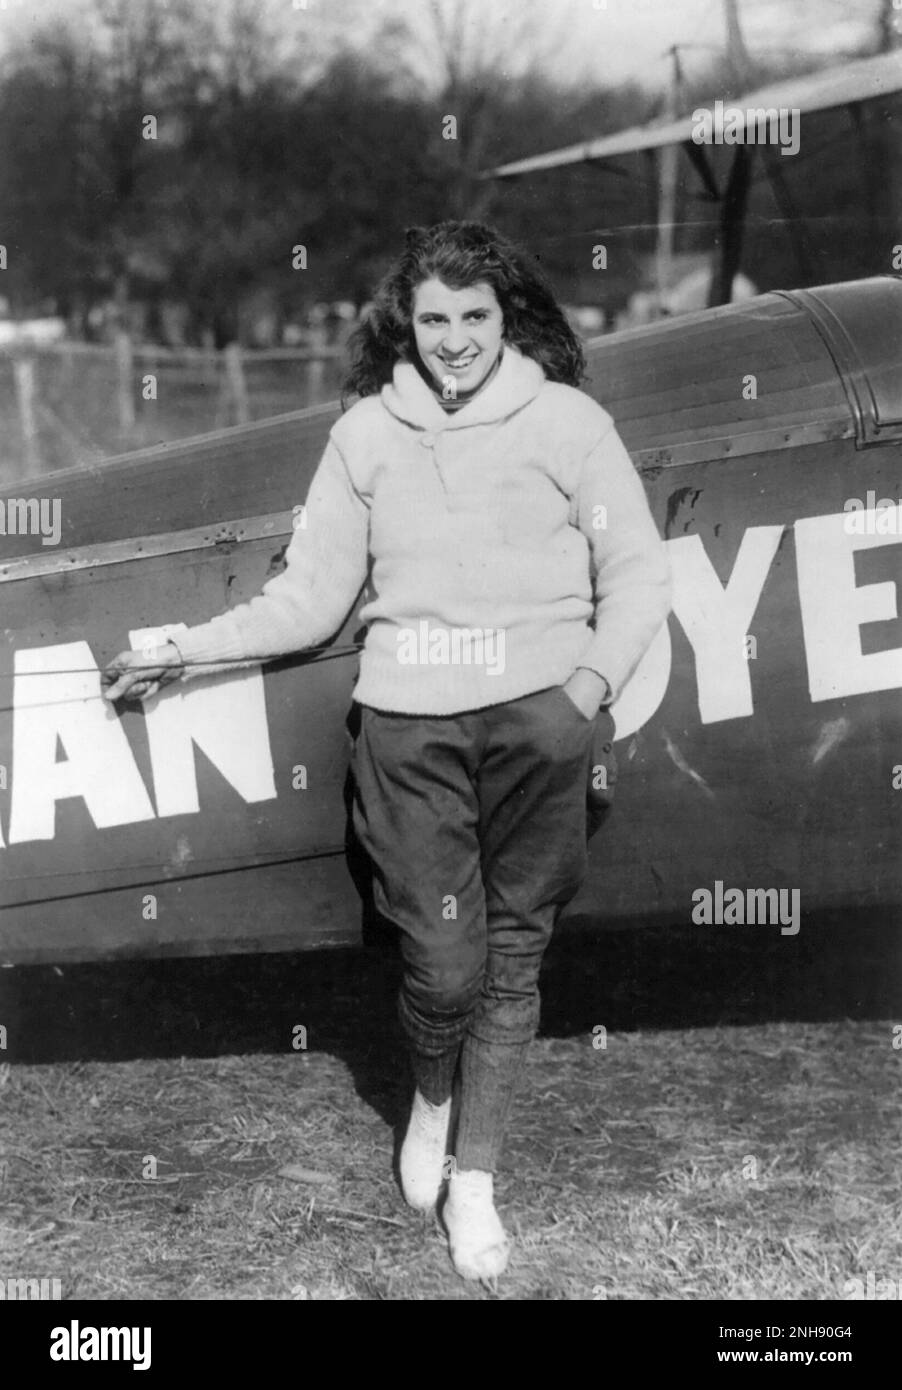 Lillian Boyer debout sur l'aile d'un biplan volant, 21st janvier 1922. Lillian Boyer (1901-1989) était une marchette américaine qui a réalisé de nombreuses cascades aériennes qui comprenaient la marche à l'aile, les transferts d'automobile à avion et les sauts en parachute entre 1921 et 1929. Banque D'Images